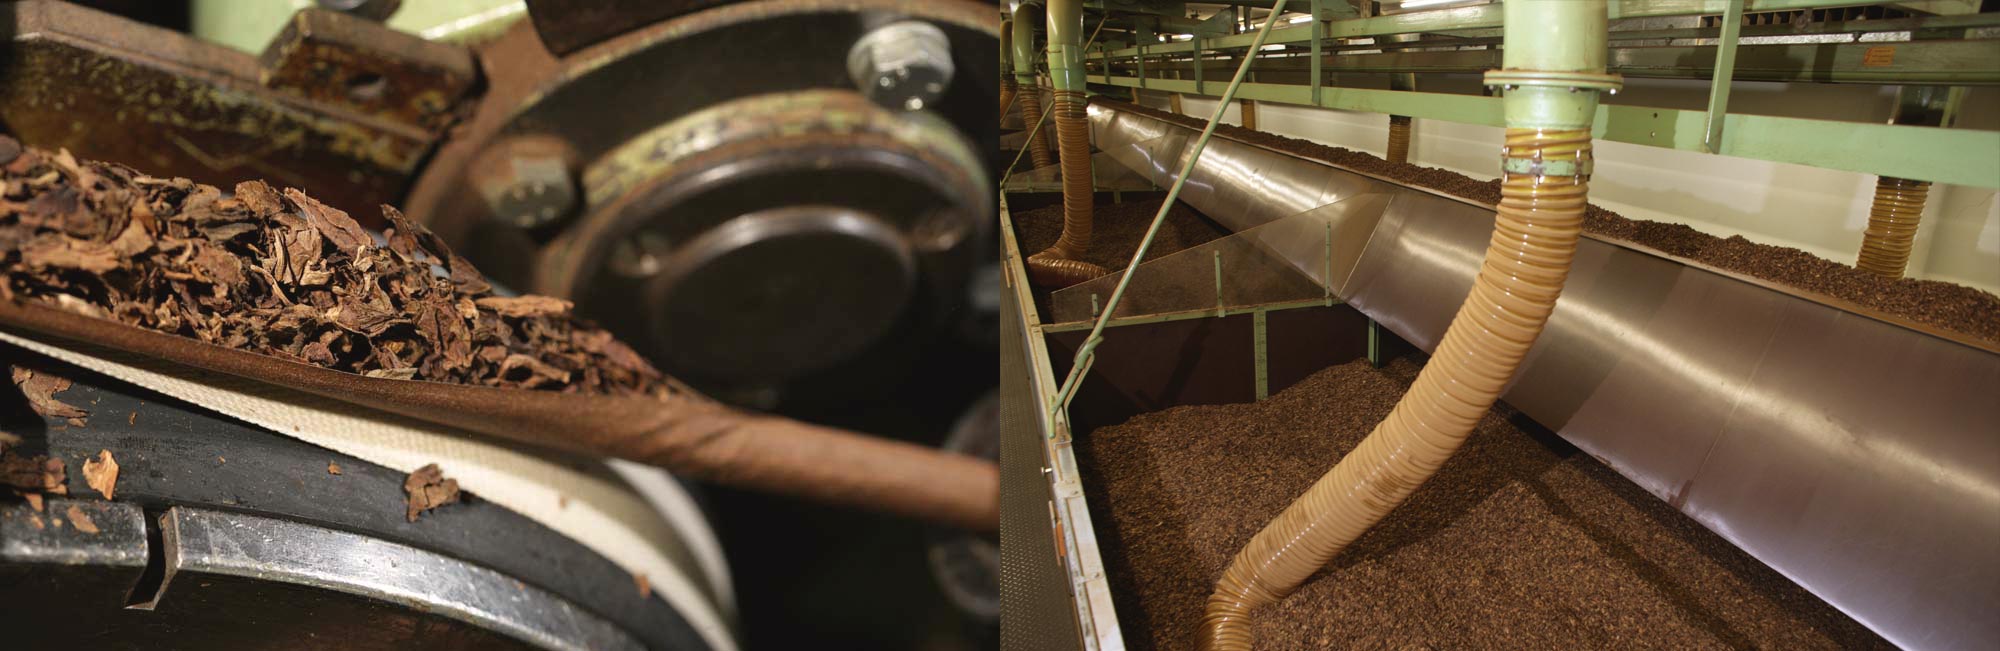 Maschinen zur Fertigung von Zigarren im Werk Königslutter